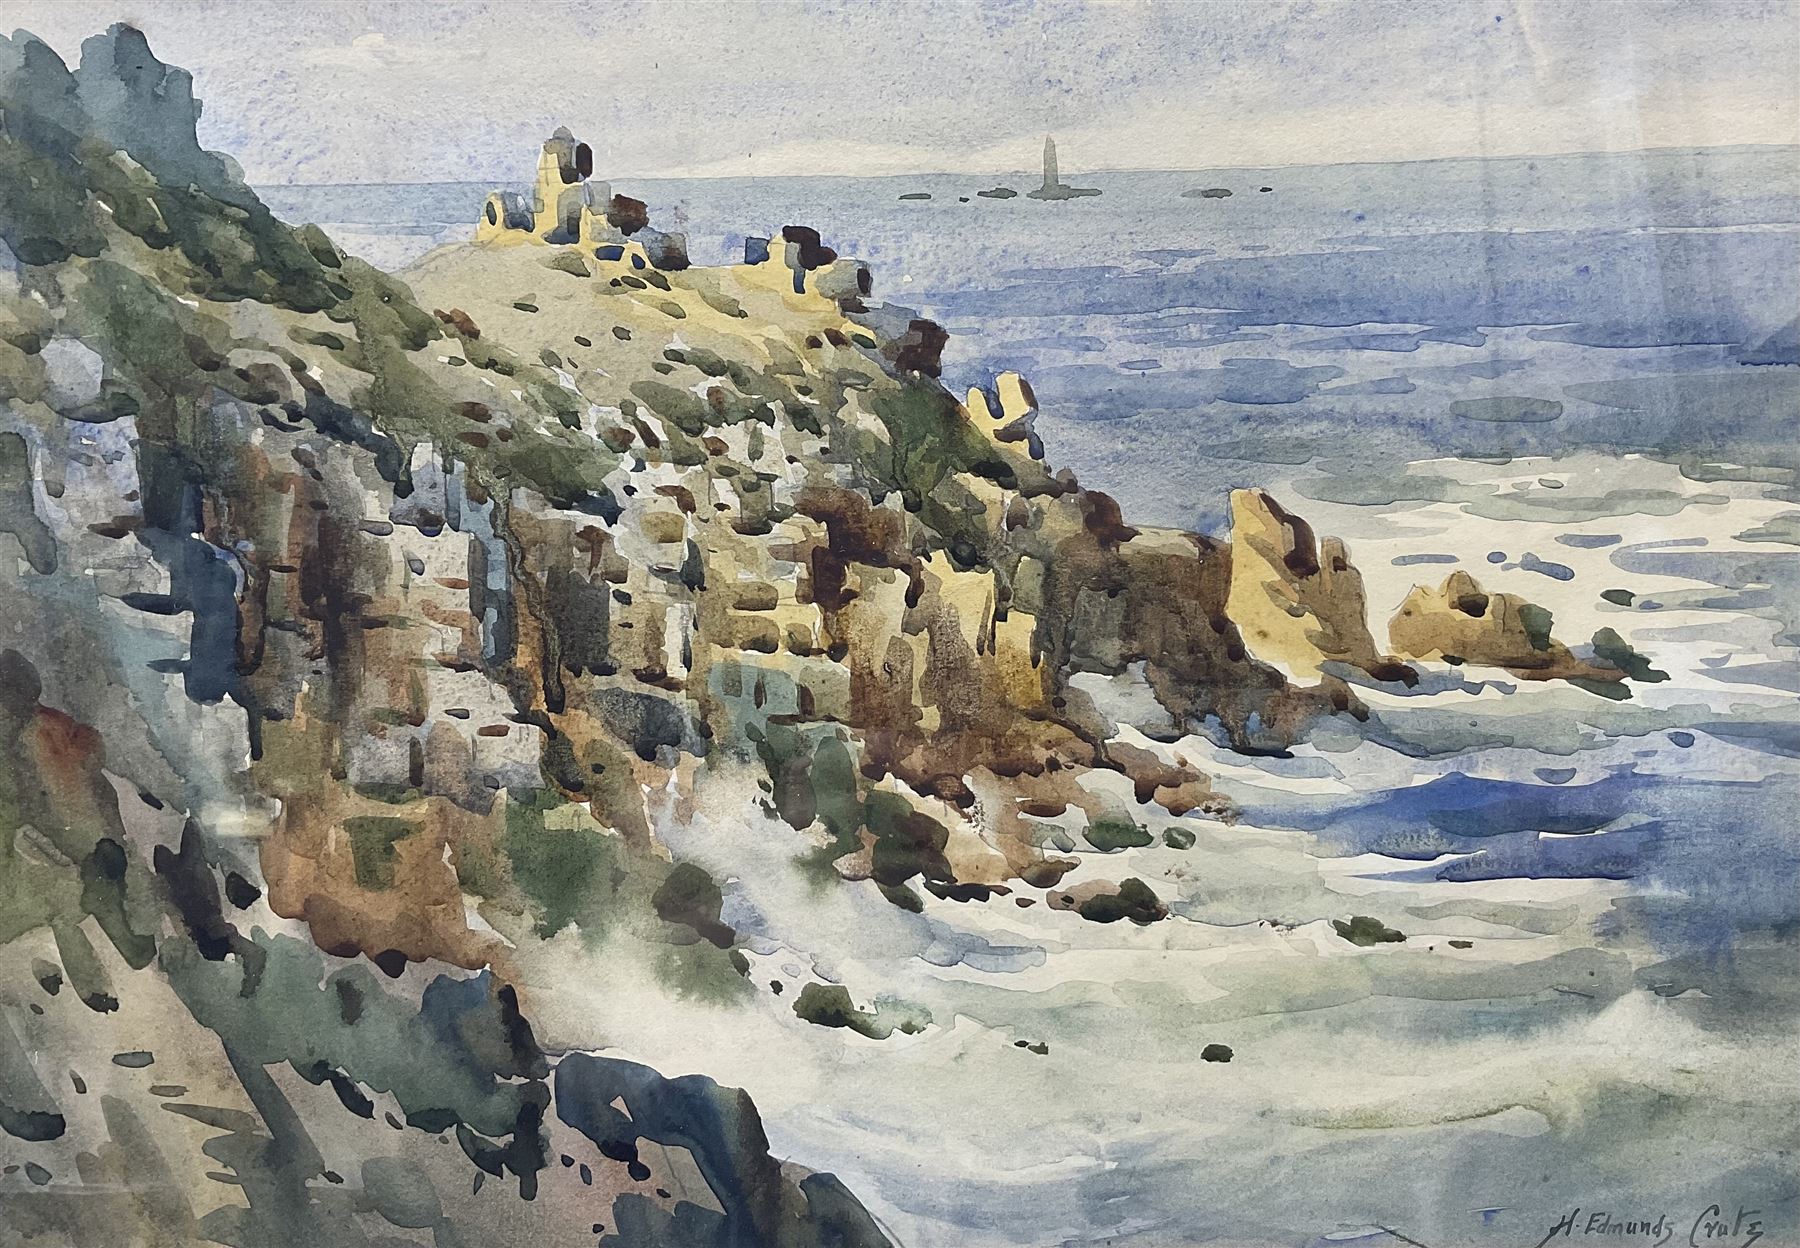 H Edmunds Crute (British 1888-1975): Coastal scene